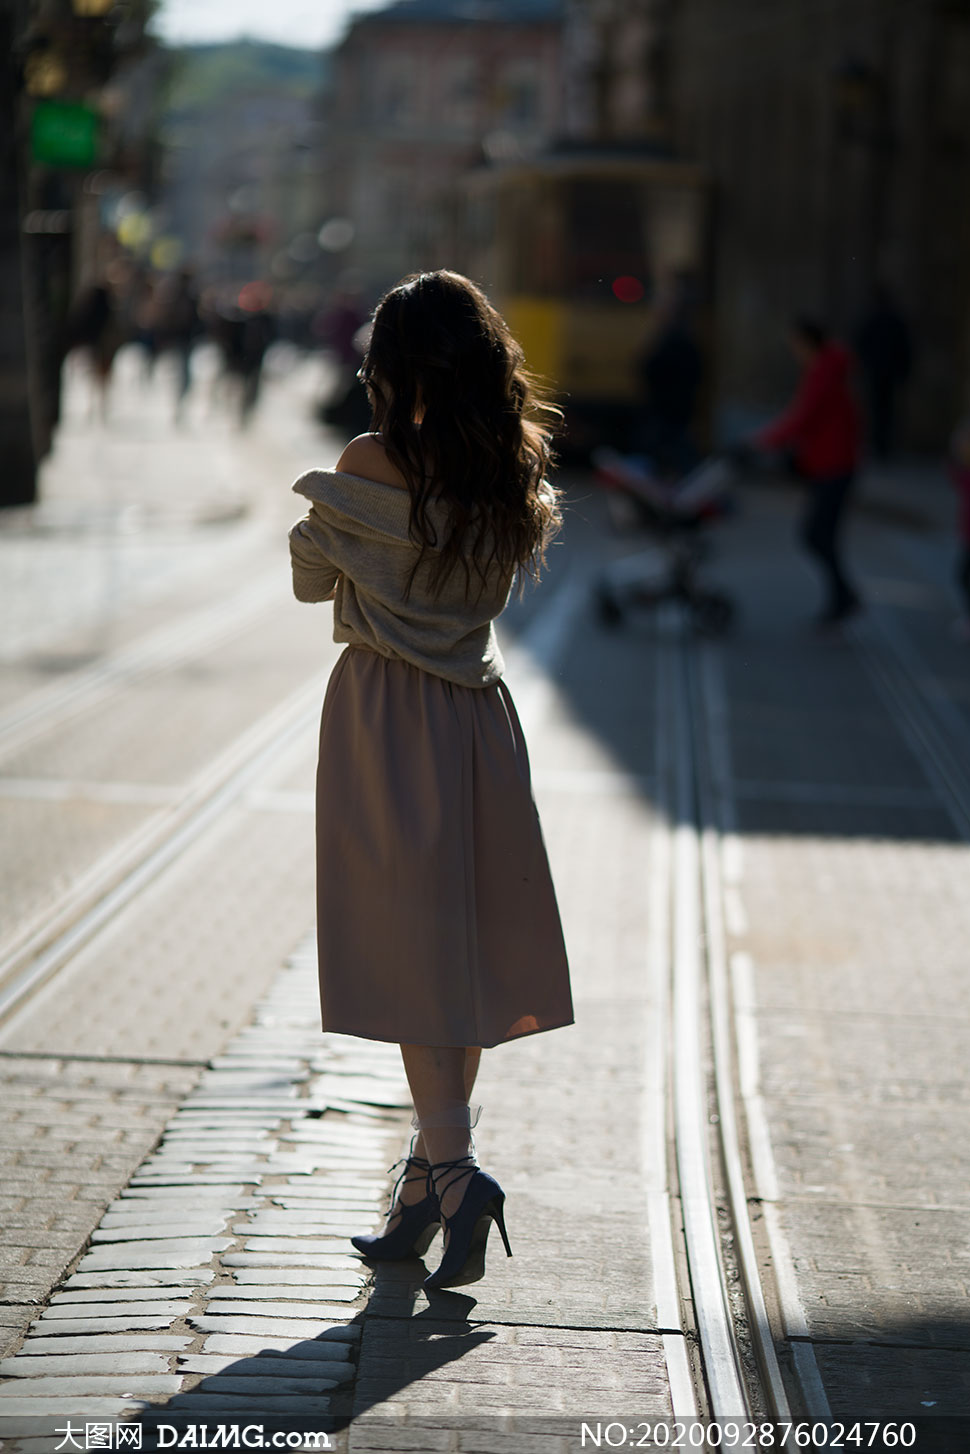 街道上的长发美女背影摄影原片素材